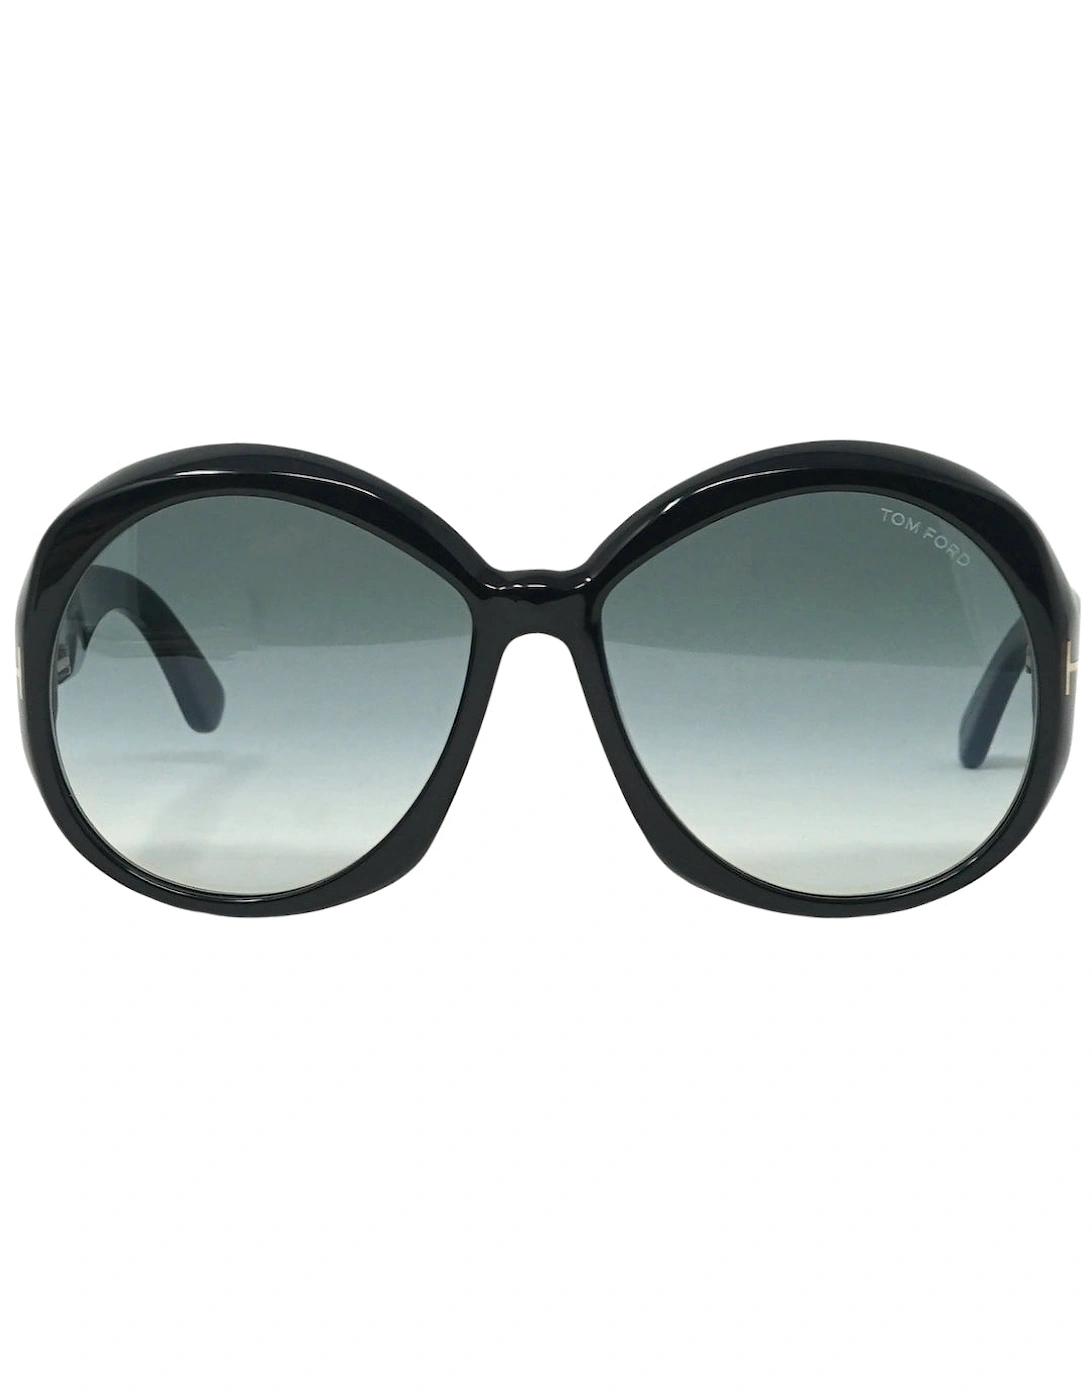 Annabelle FT1010 01B Black Sunglasses, 4 of 3